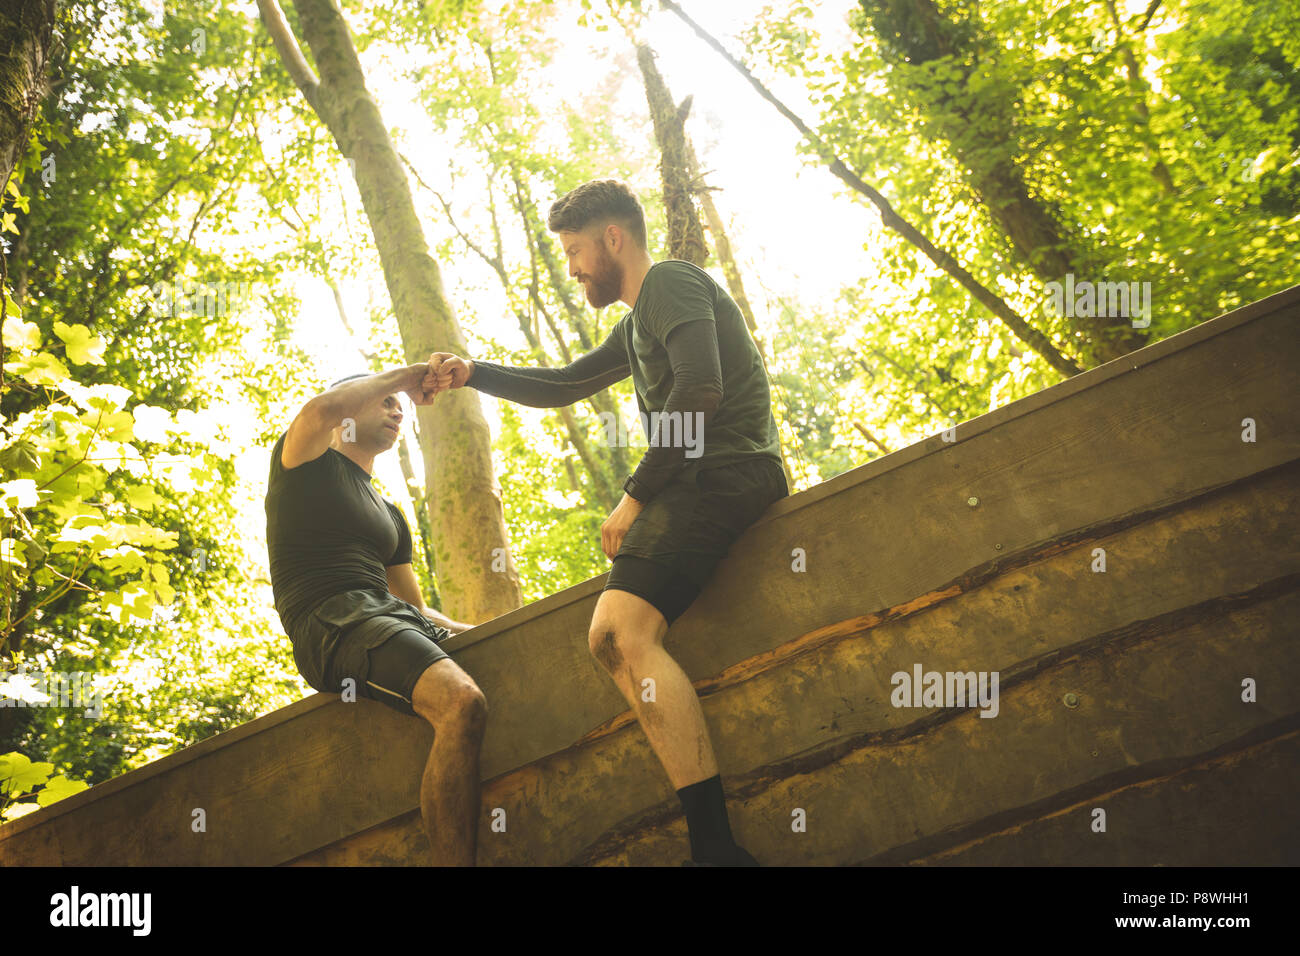 Colocar el hombre ayudando a su compañero de equipo para escalar una pared de madera Foto de stock